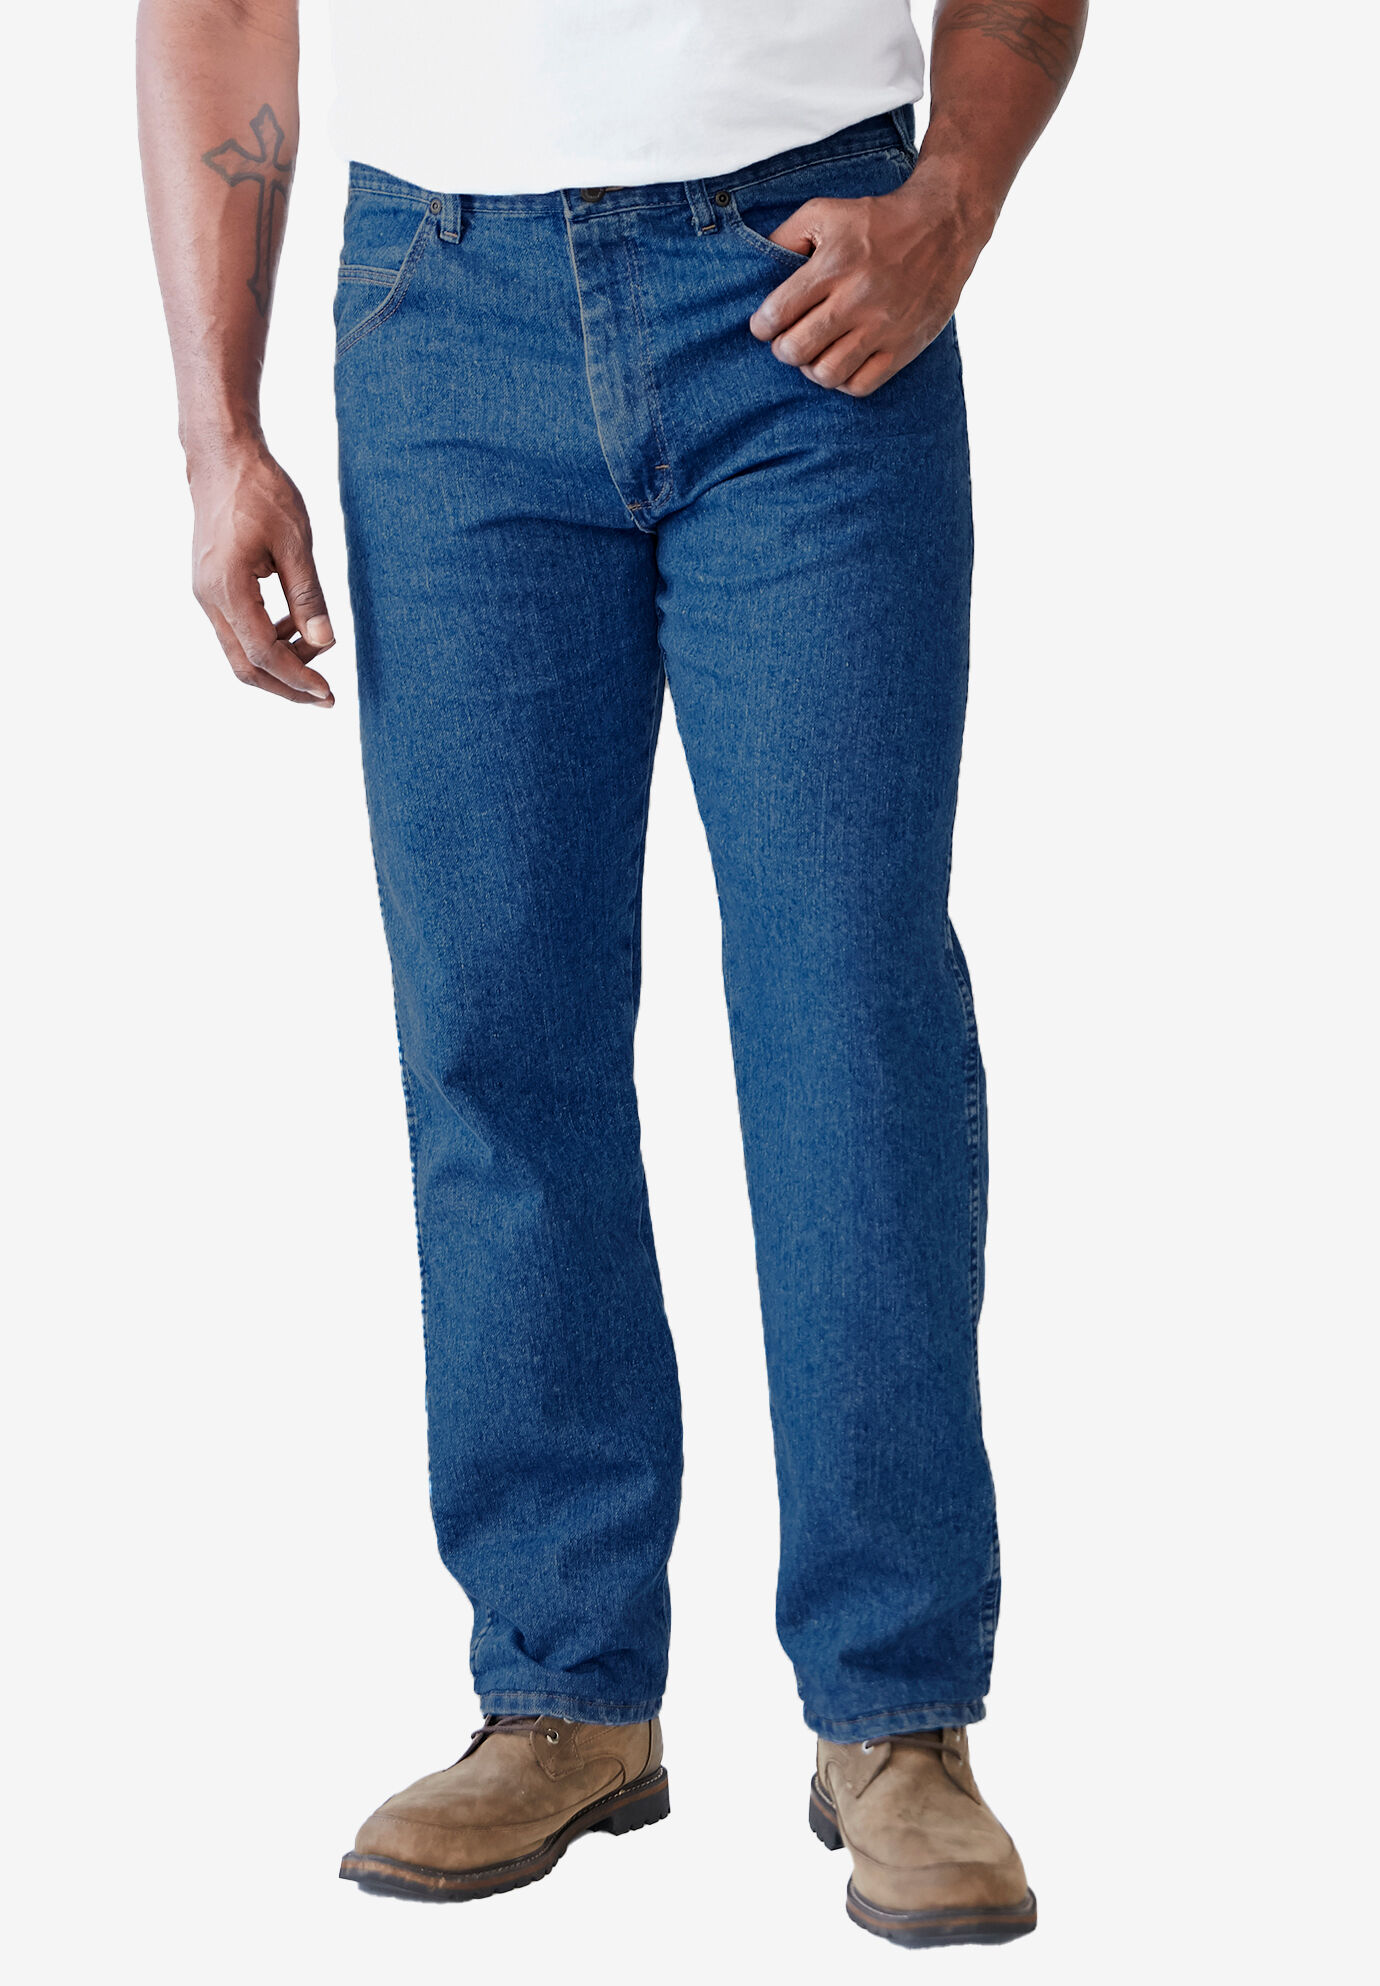 d&g jeans amazon